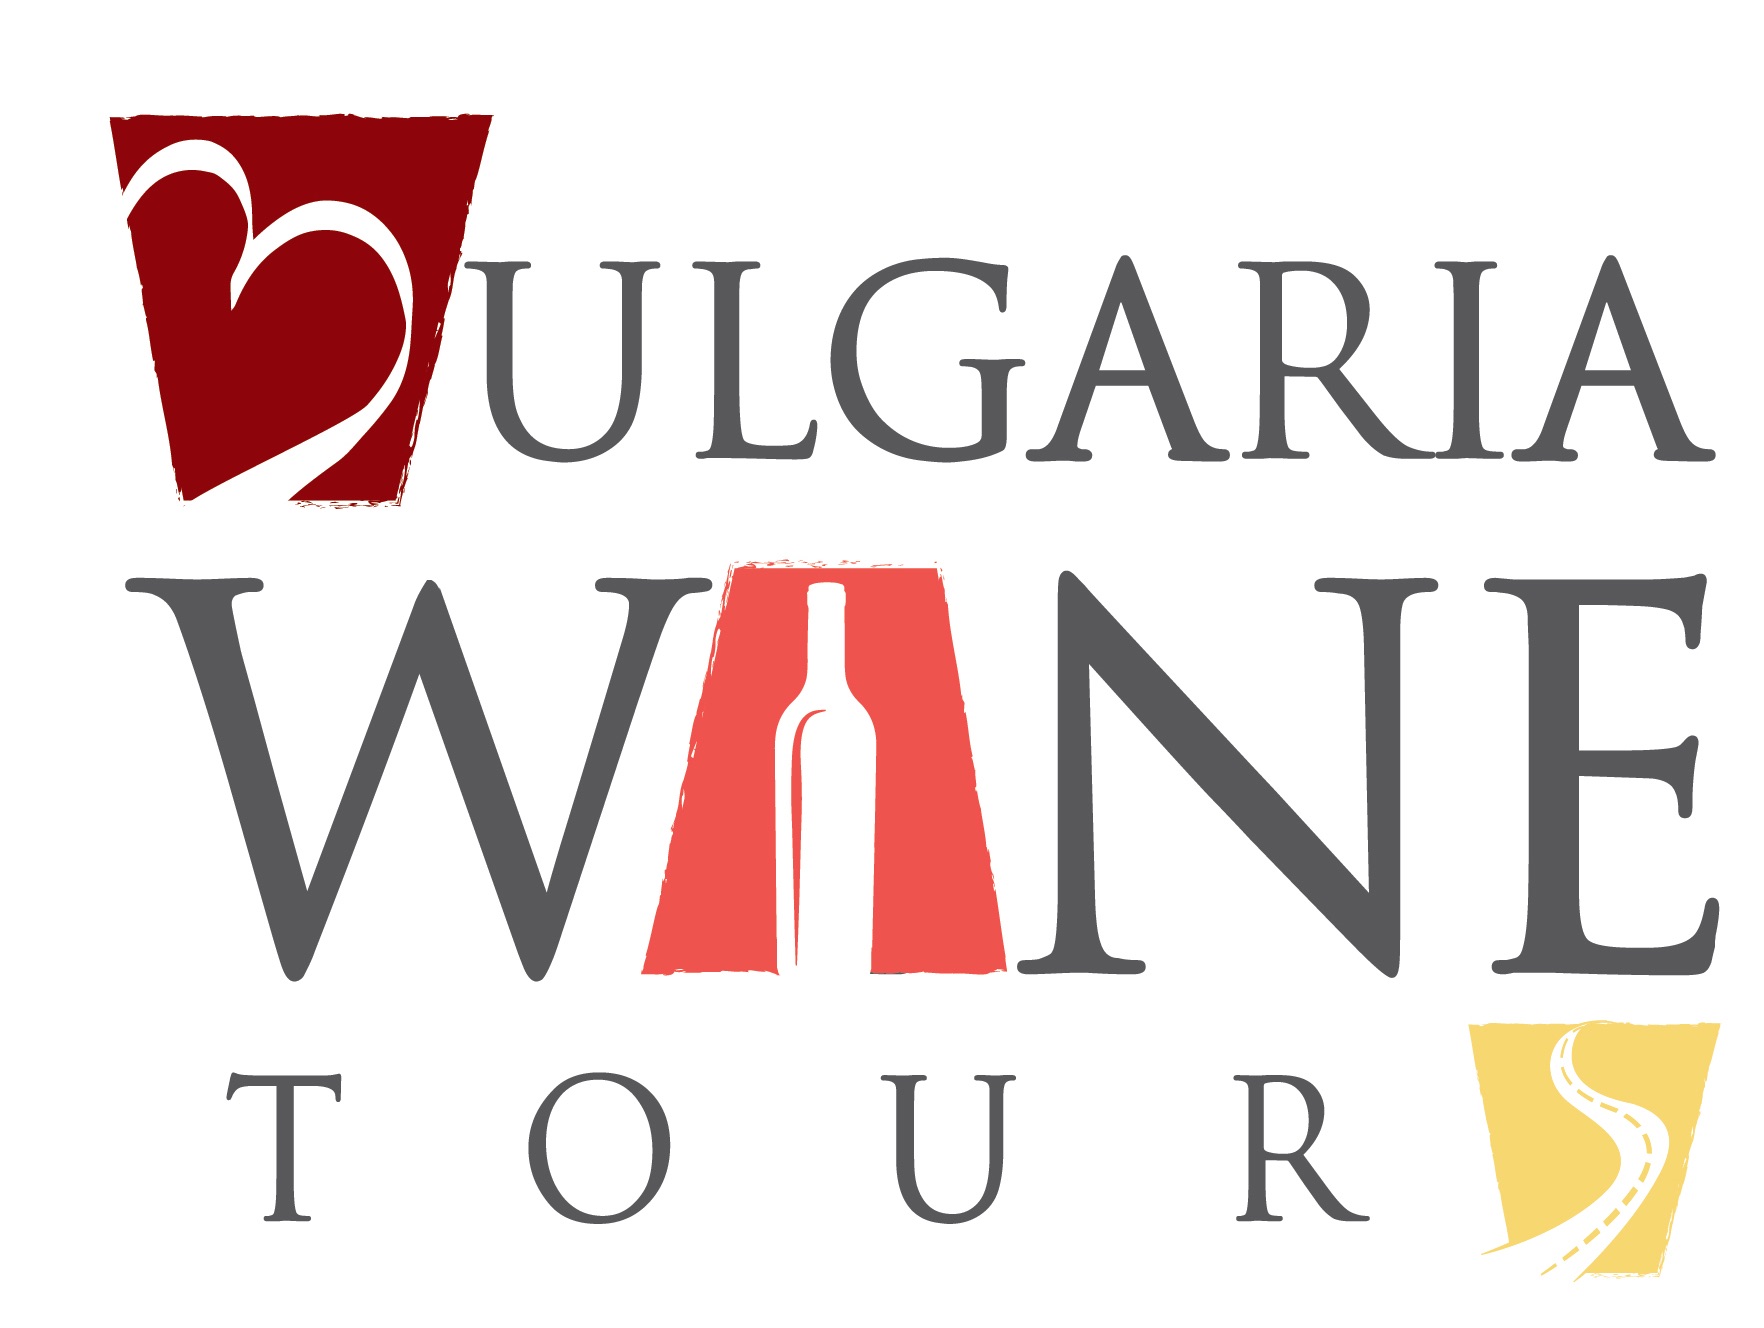 Bulgaria wine tours